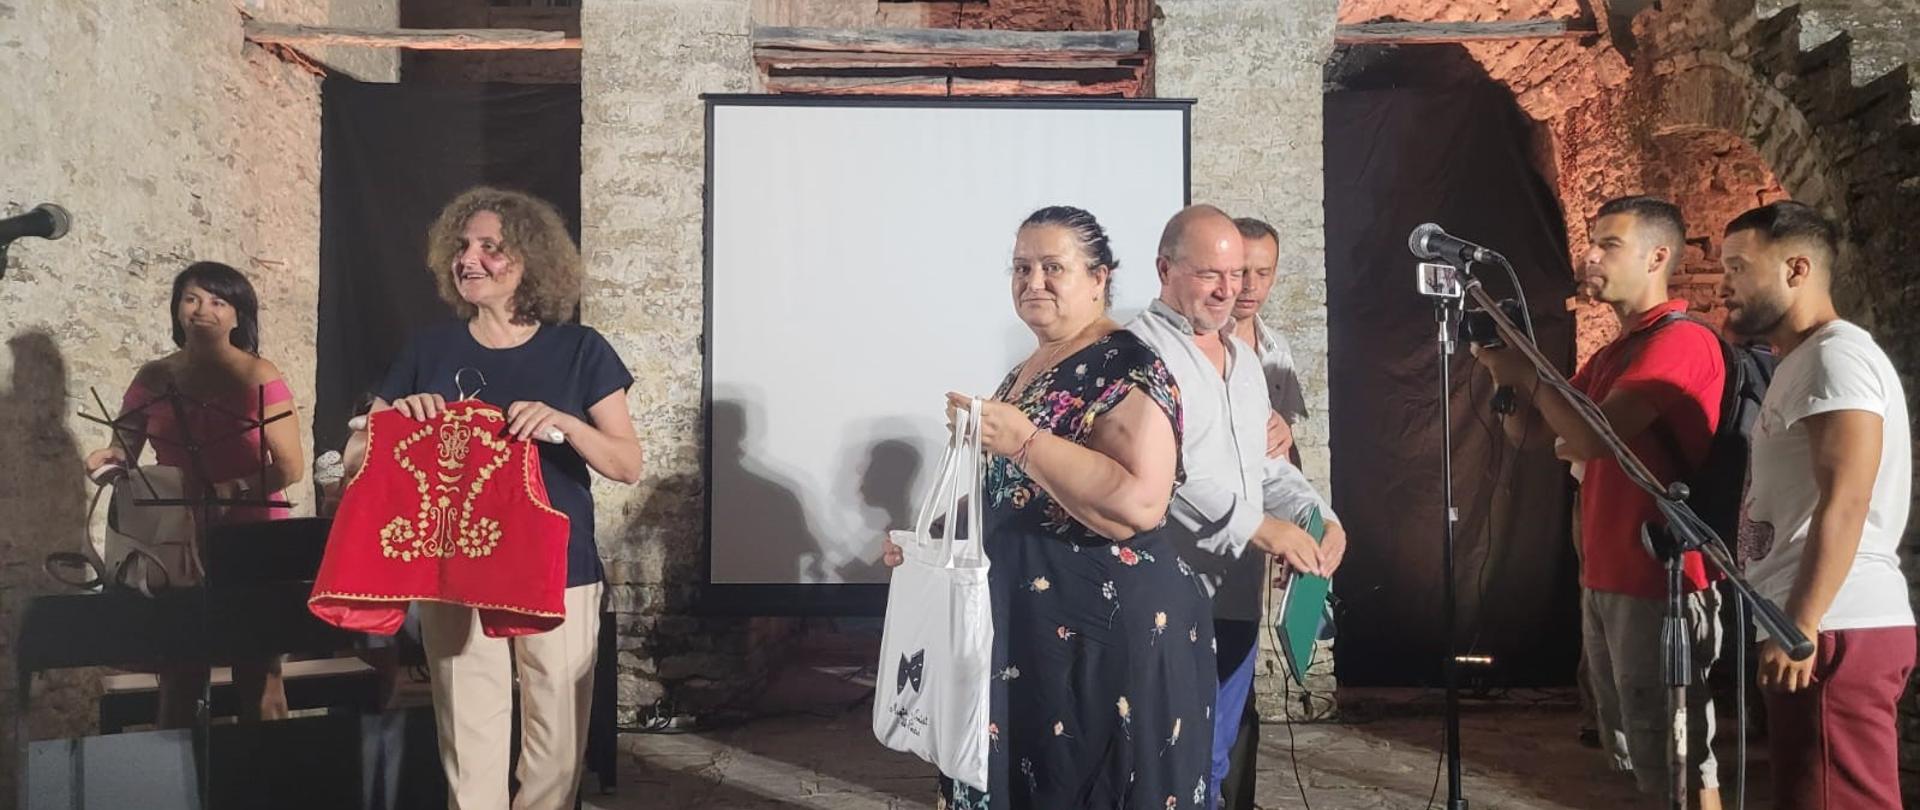 28 lipca br. w historycznym mieście Gjirokaster Ambasada RP w Tiranie zorganizowała Wieczór poezji polskiej. 